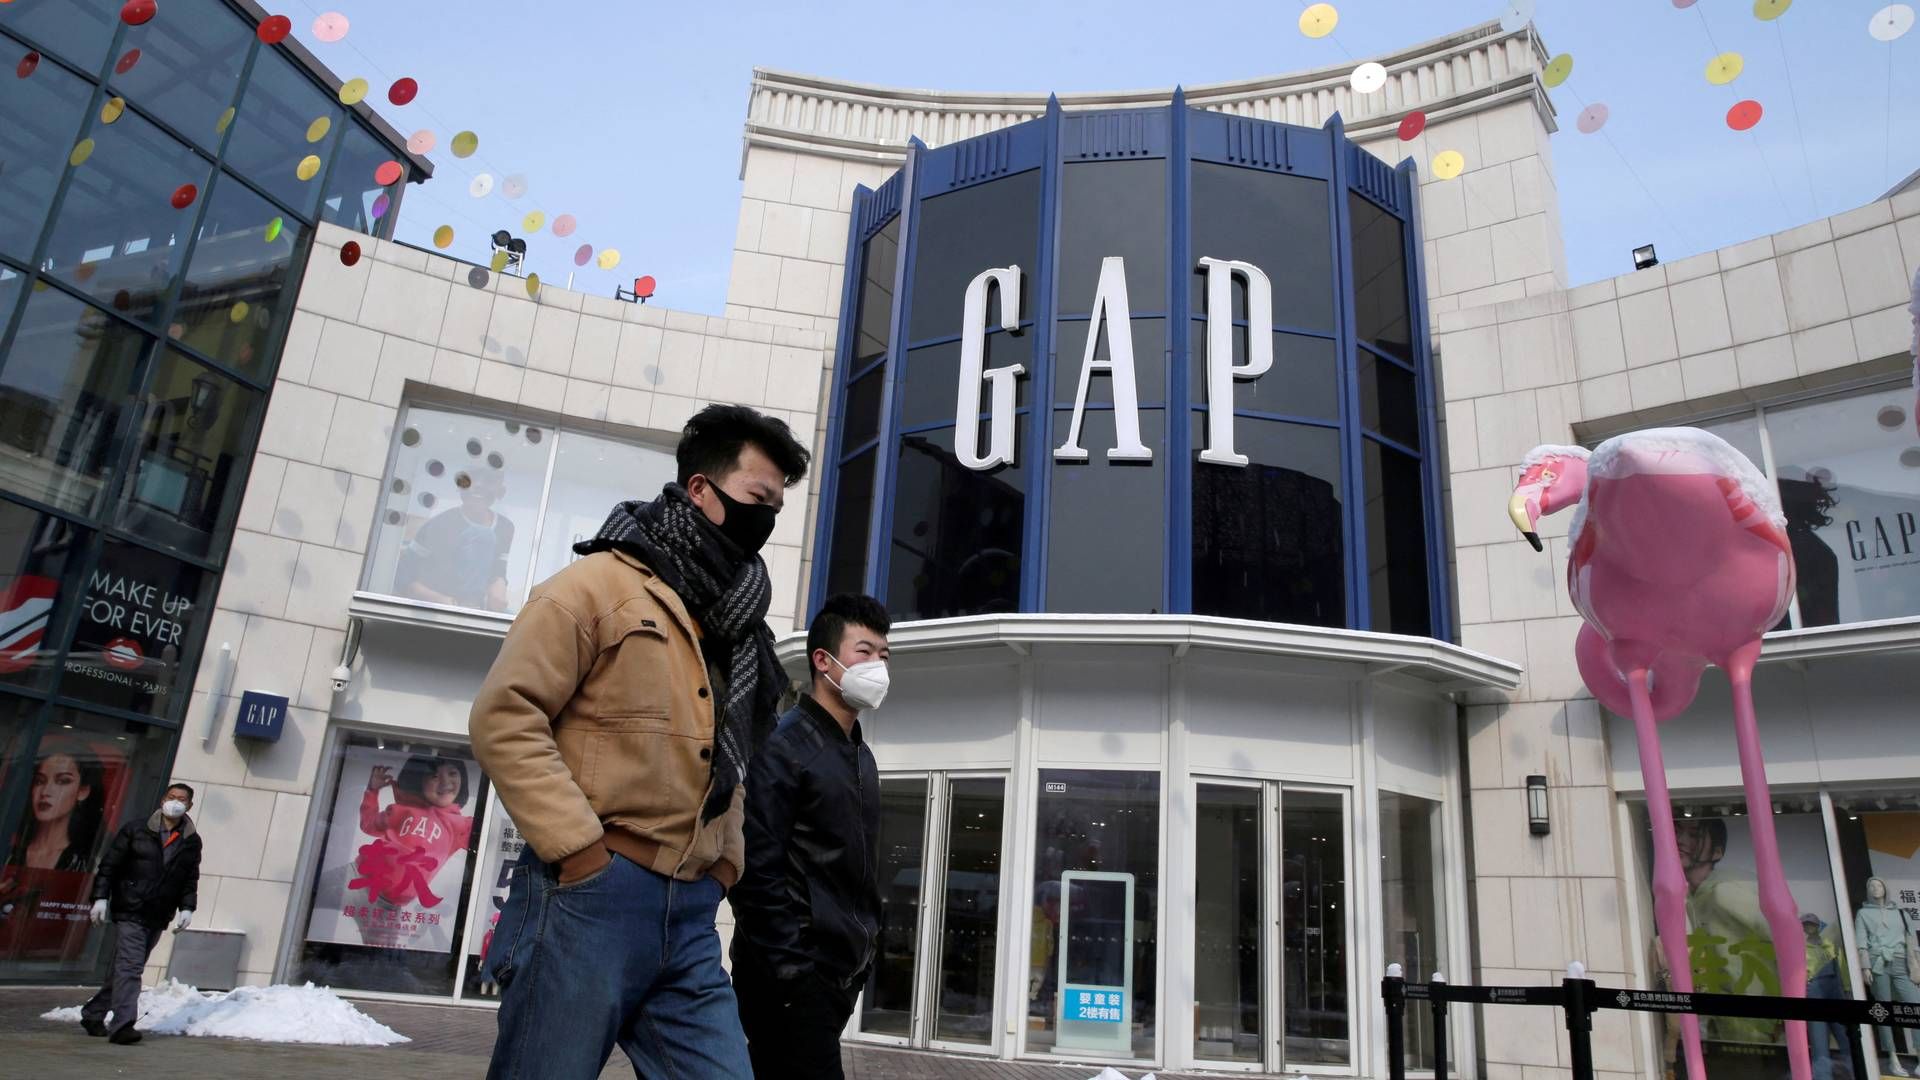 Tøjkoncernen Gap har for nylig fået ny topchef i Richard Dickson. | Foto: JASON LEE/REUTERS / X01757